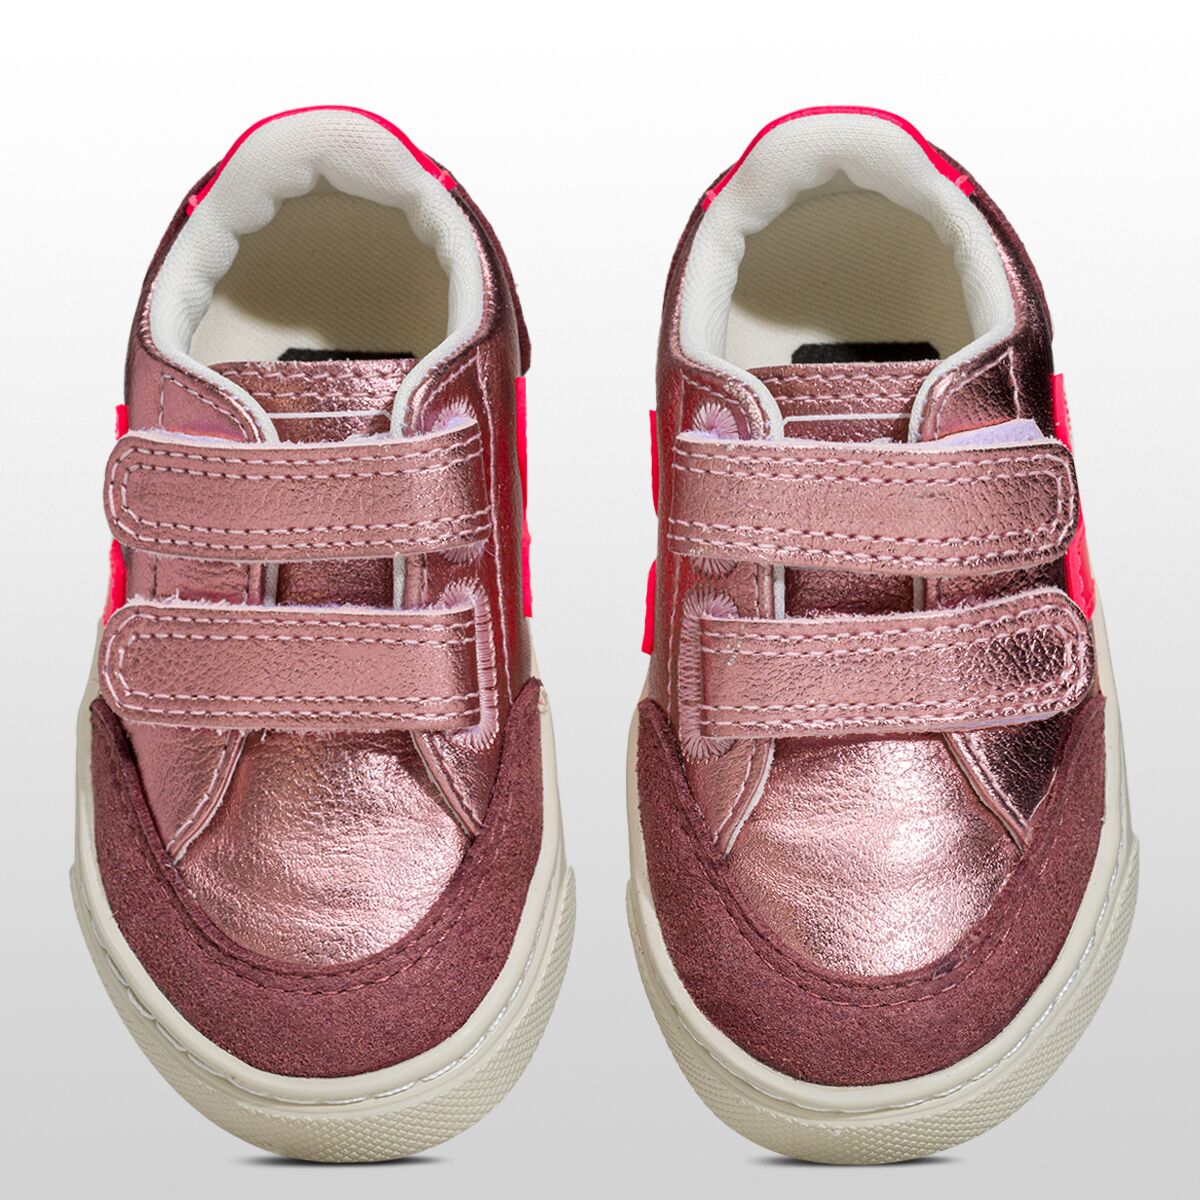 Veja V-12 Velcro Sneaker - Toddlers' - Kids